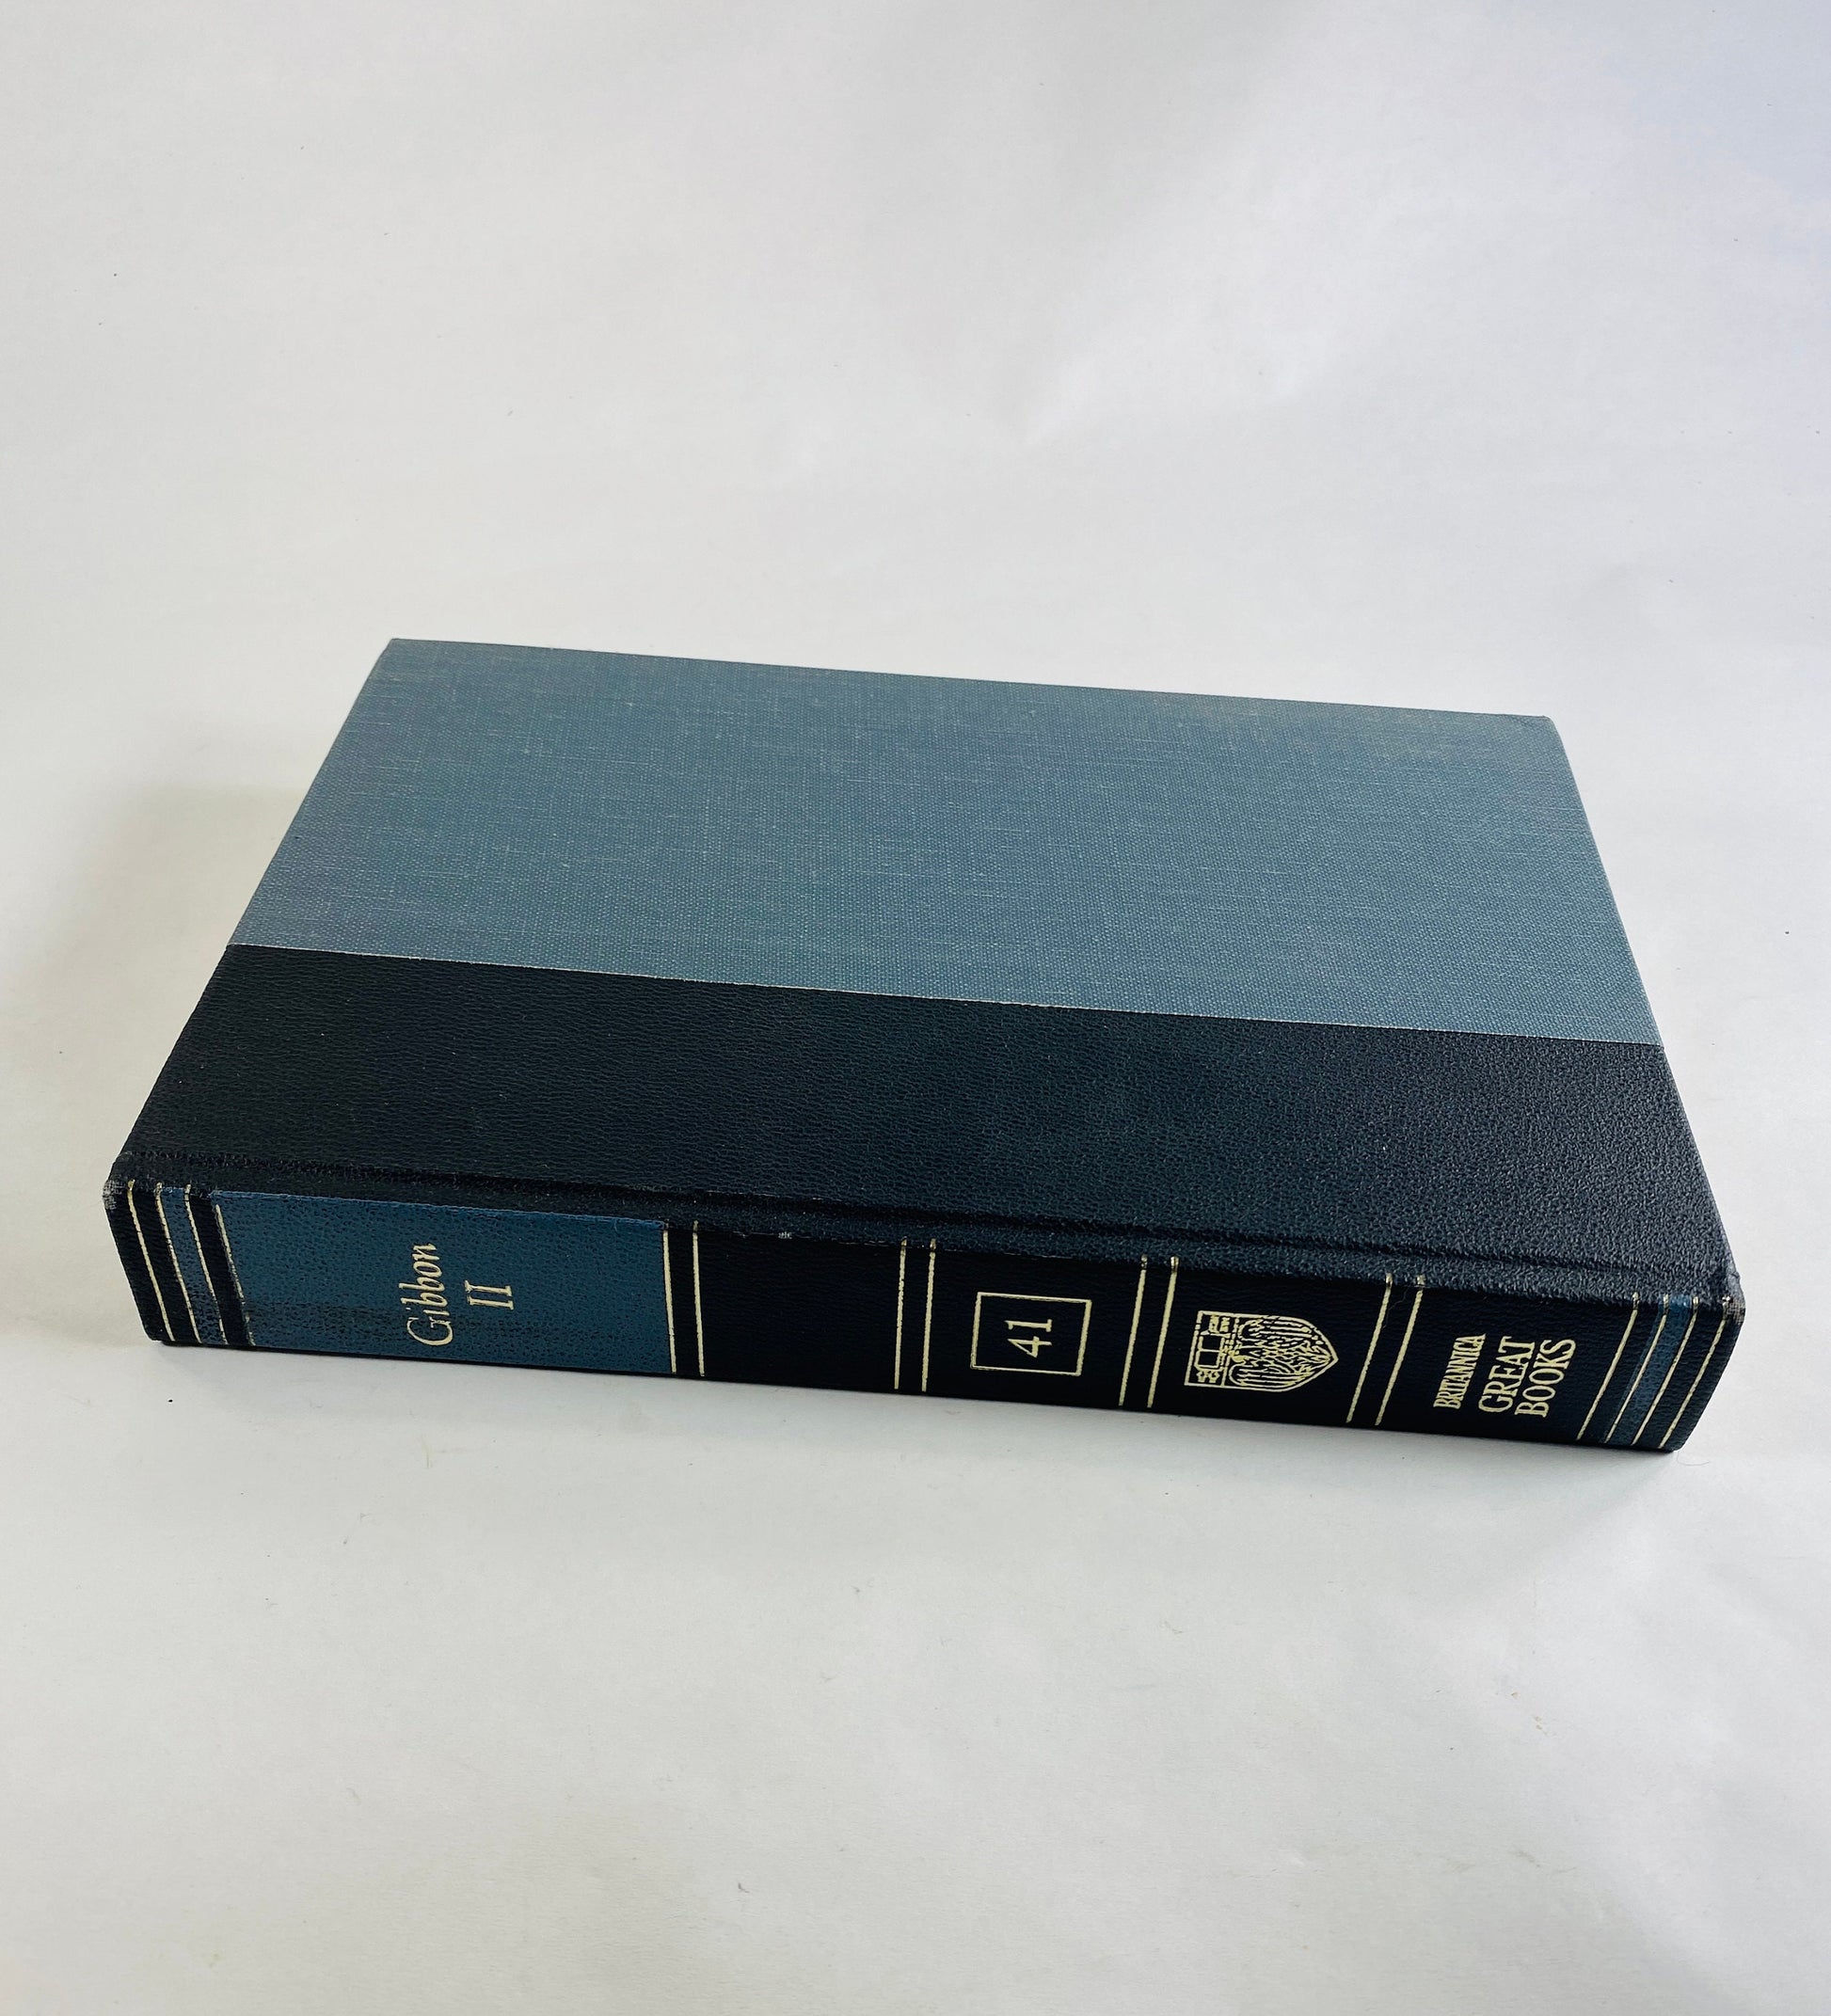 GORGEOUS vintage blue Tacitus Thucydides Herodotus Gibbon Britannica Great Books Staging bookshelf decor circa 1986